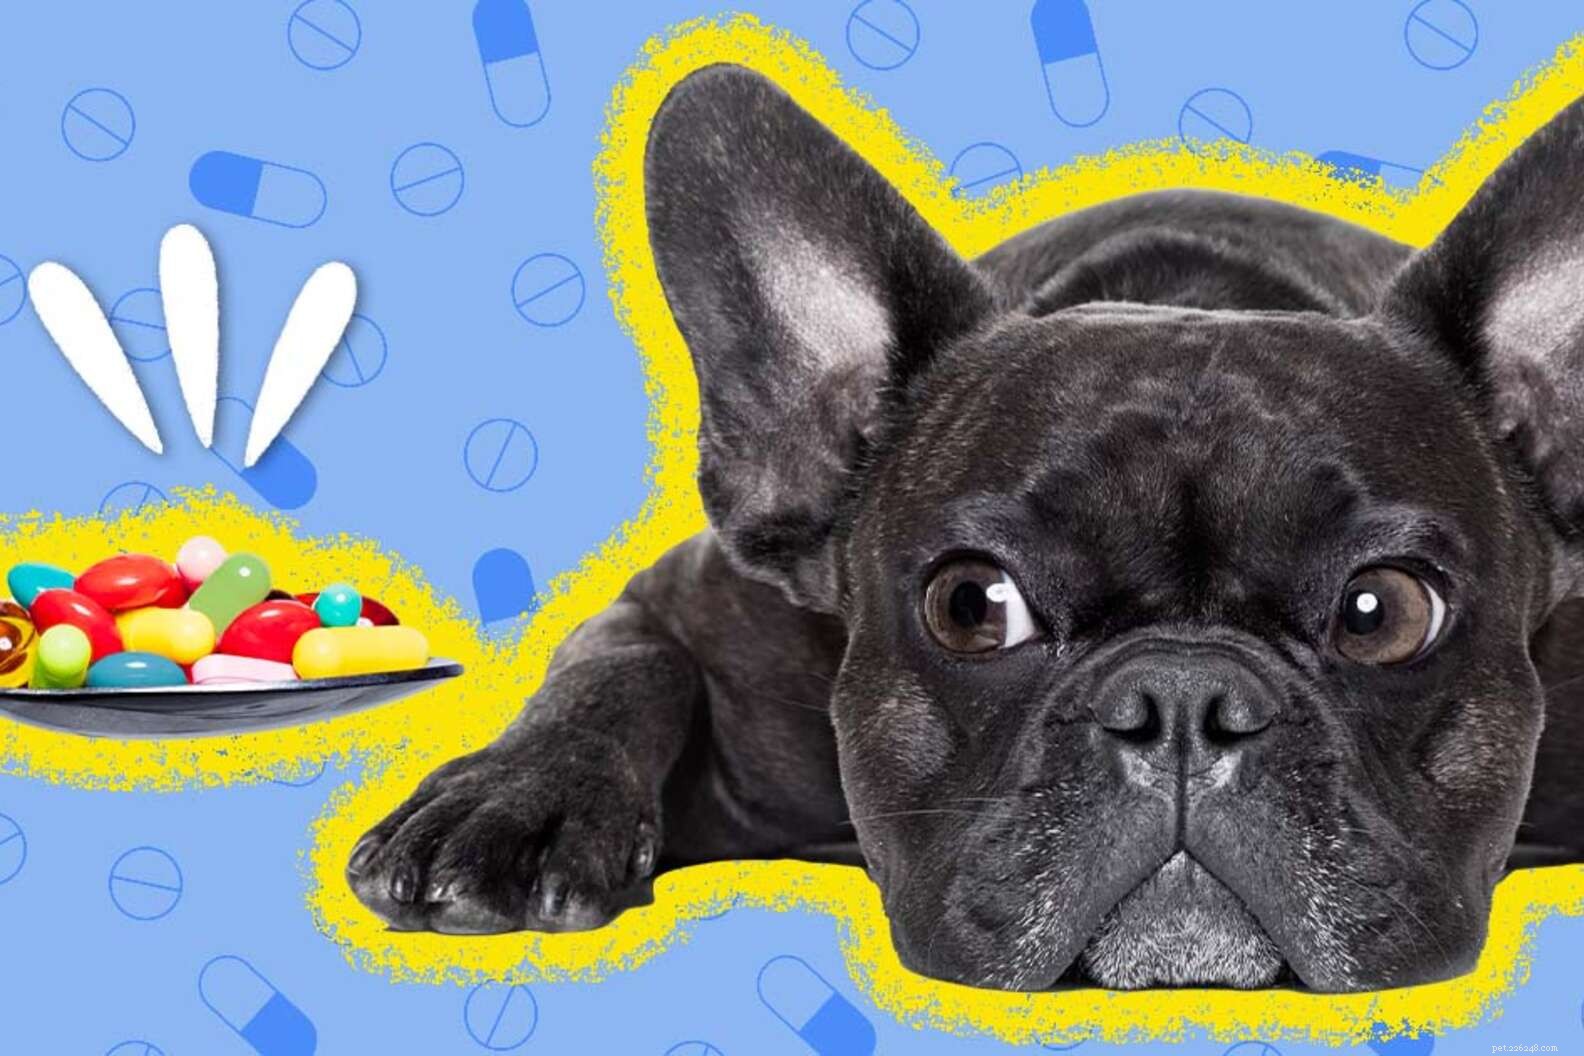 강아지를 위한 불안 치료제가 효과가 있습니까?